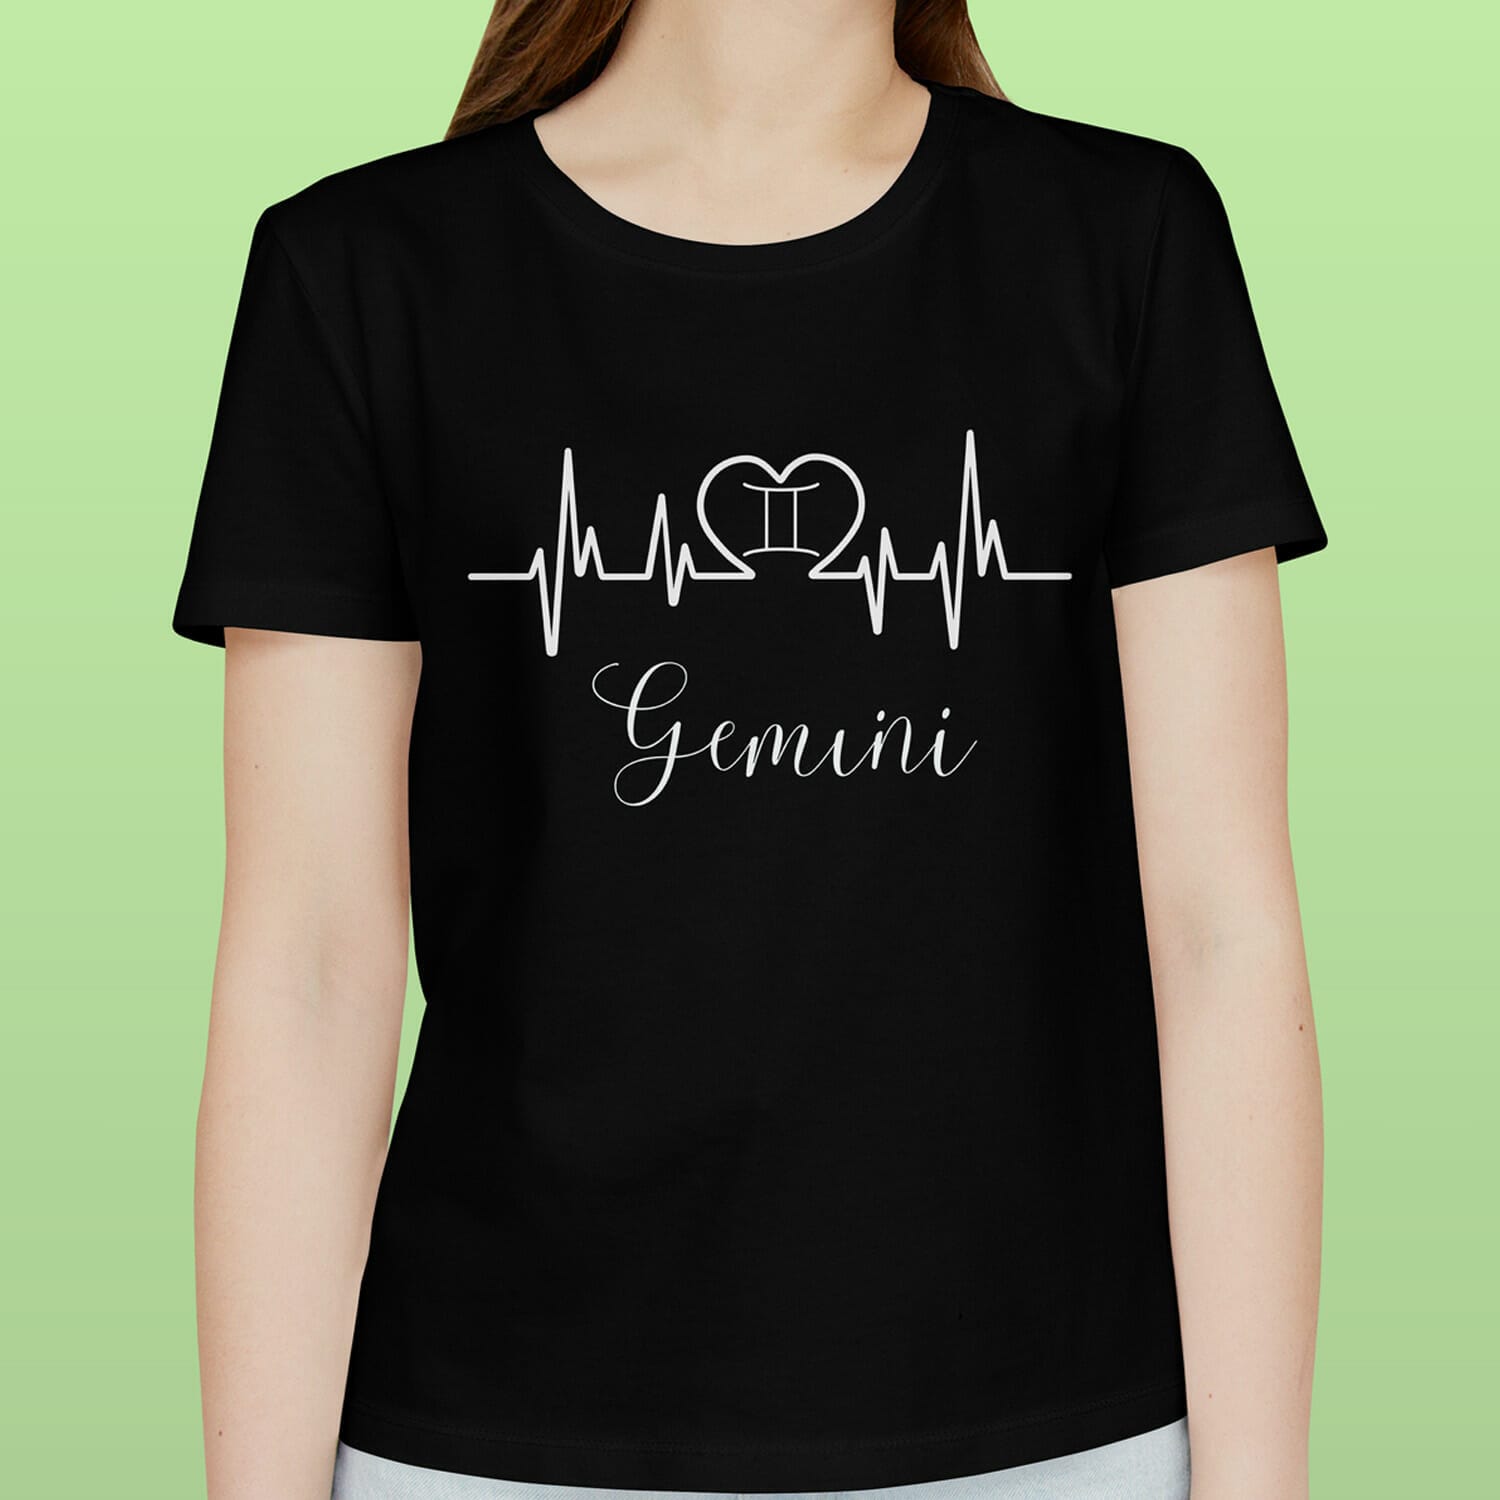 Gemini Zodiac T-Shirt Design For Women.